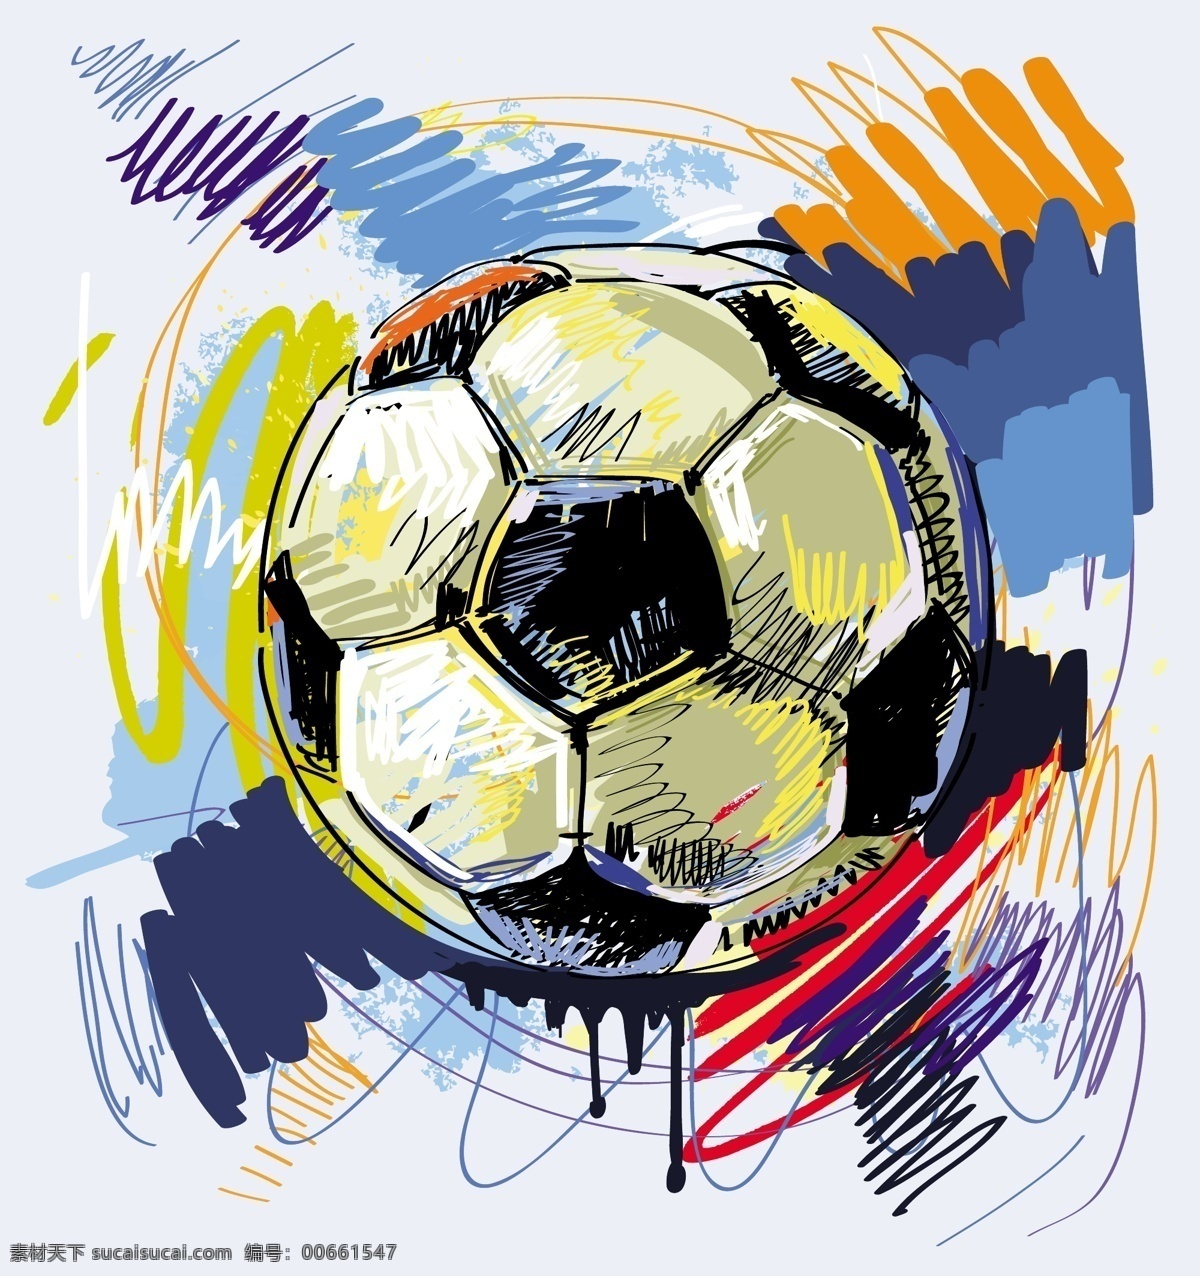 彩绘 足球 插画 矢量 彩铅 线绘 手绘 涂鸦 线描 绘画 美术 体育 体育运动 运动 赛事 比赛 背景 海报 画册 文化艺术 白色